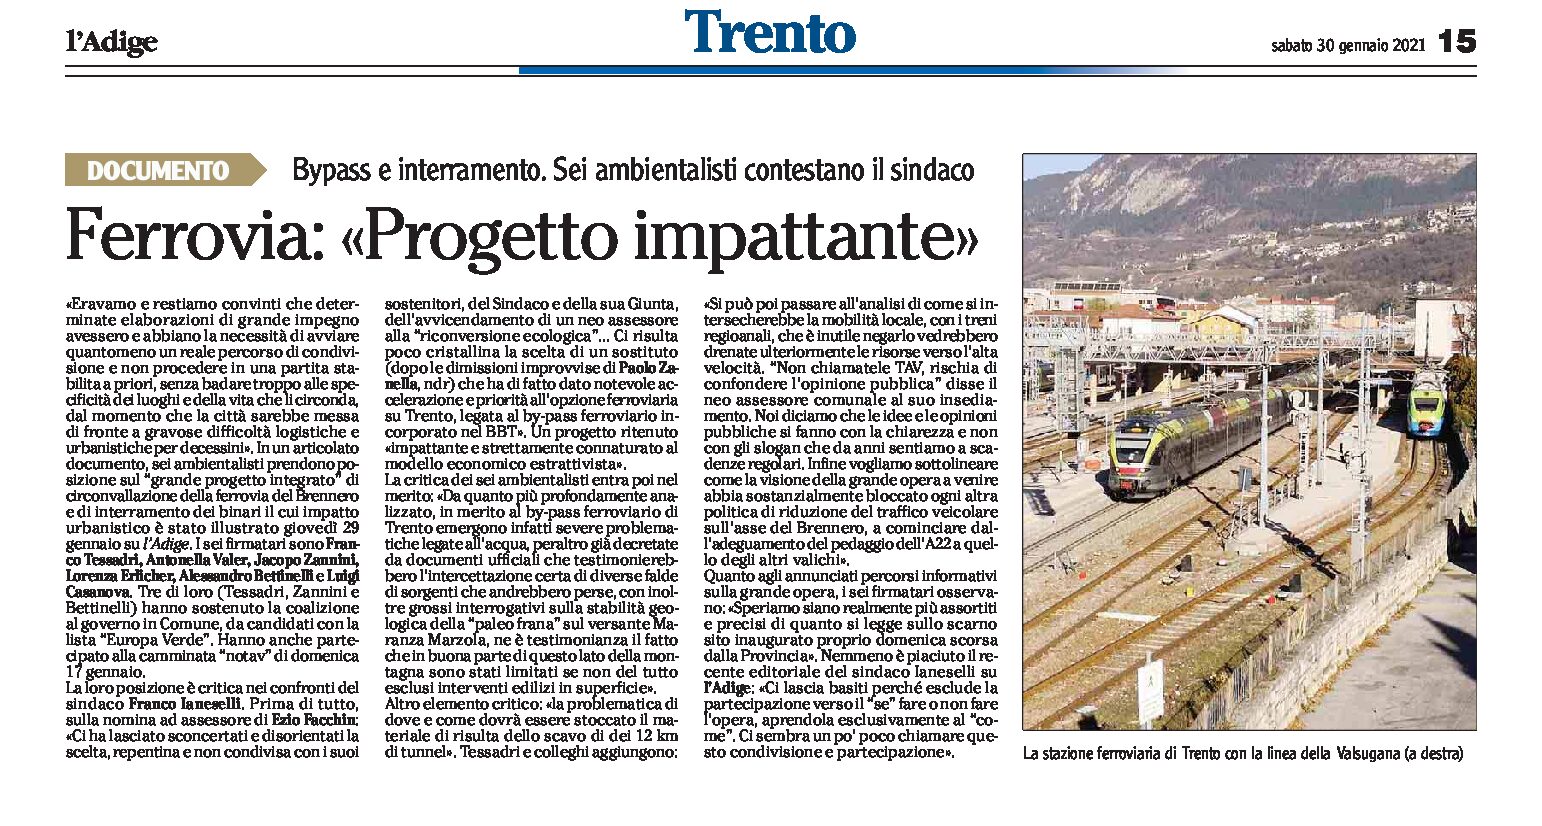 Trento, interramento: 6 ambientalisti contestano il sindaco, “progetto impattante”